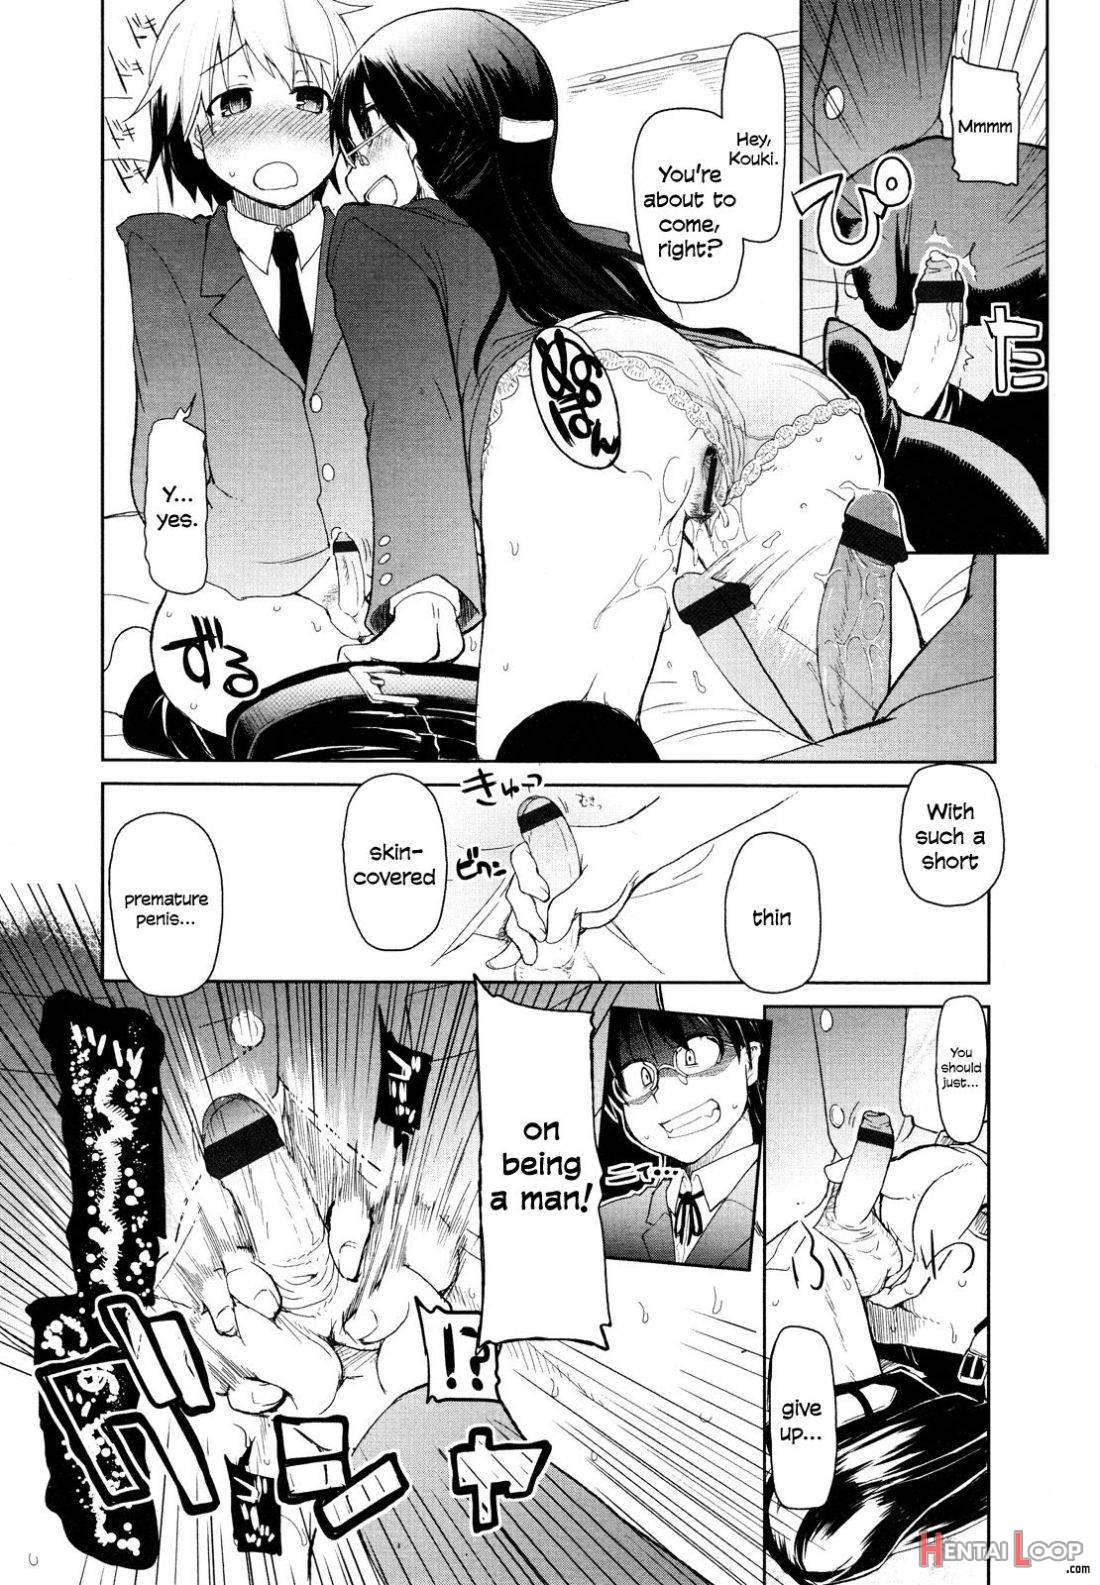 Kouki-kun no Henyou page 12